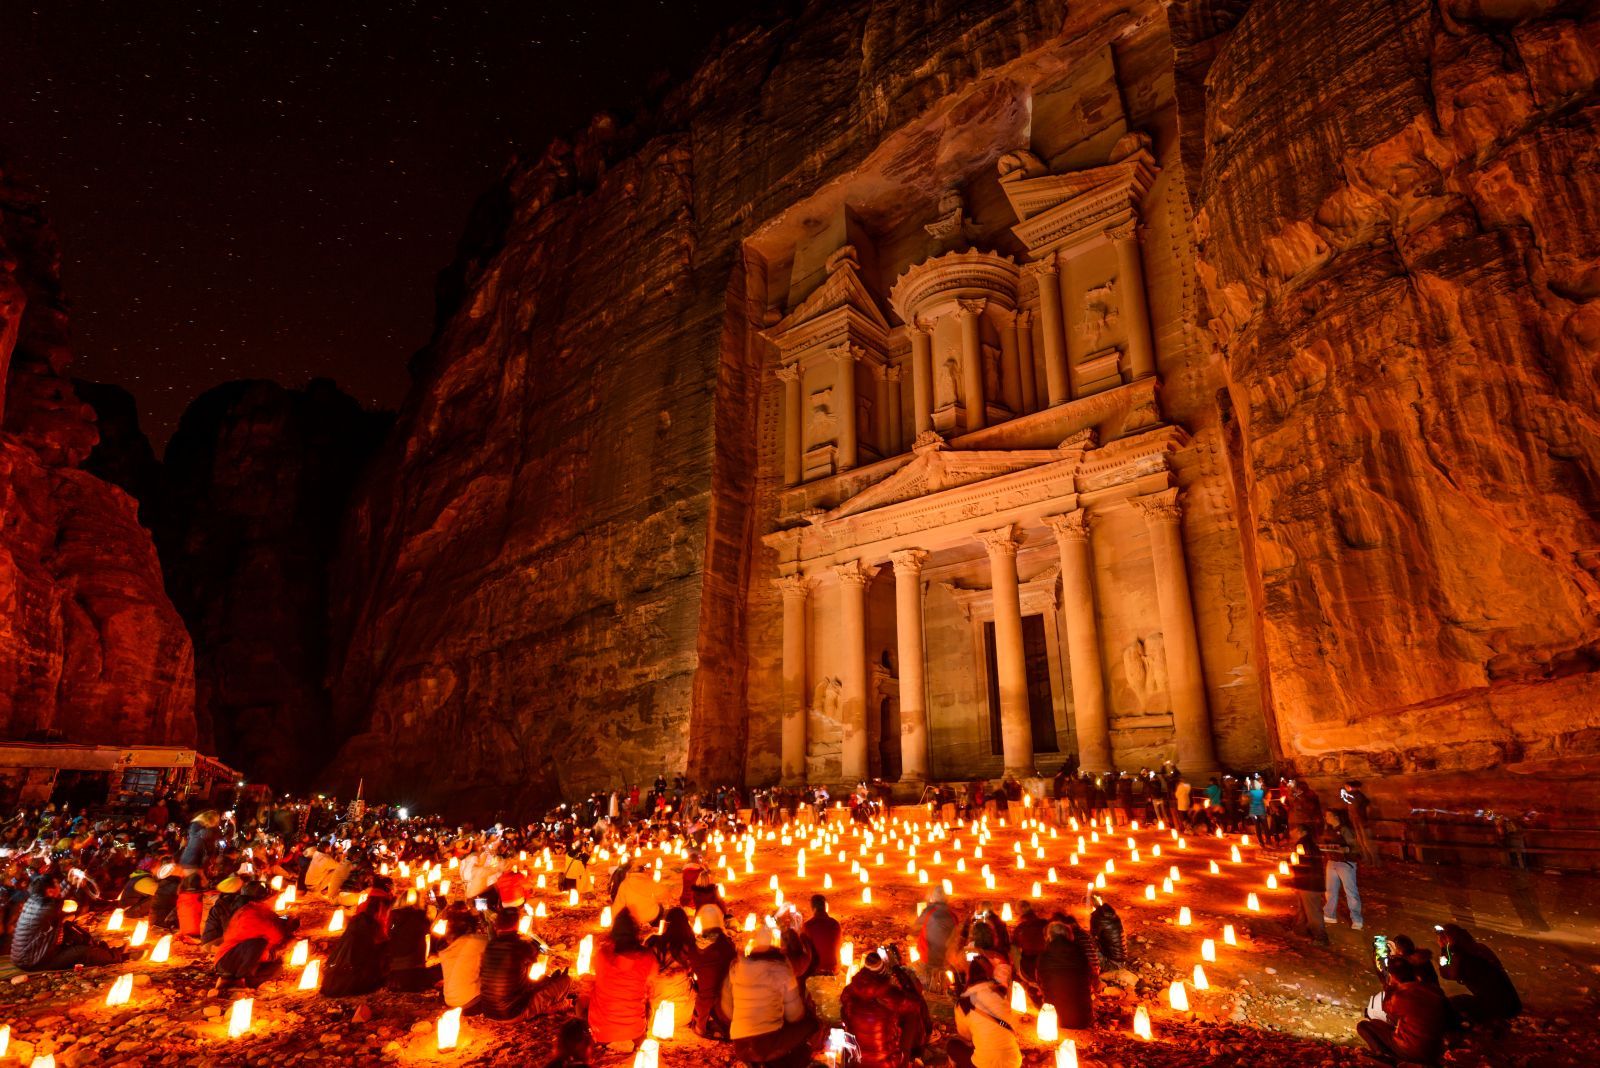 Al Khazneh in Petra, Jordan, at night